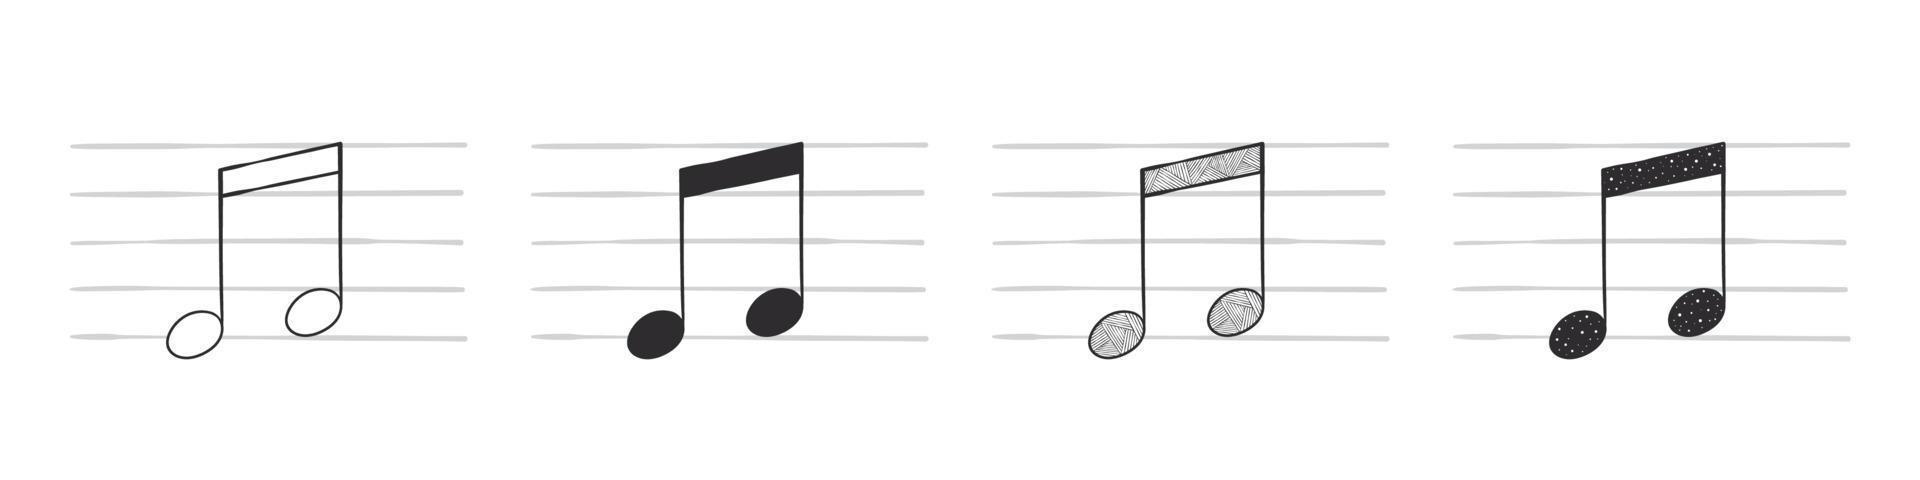 Musiknoten. zwei Achtelnoten. handgezeichnete Musiksymbole in verschiedenen Variationen. Vektor-Illustration vektor